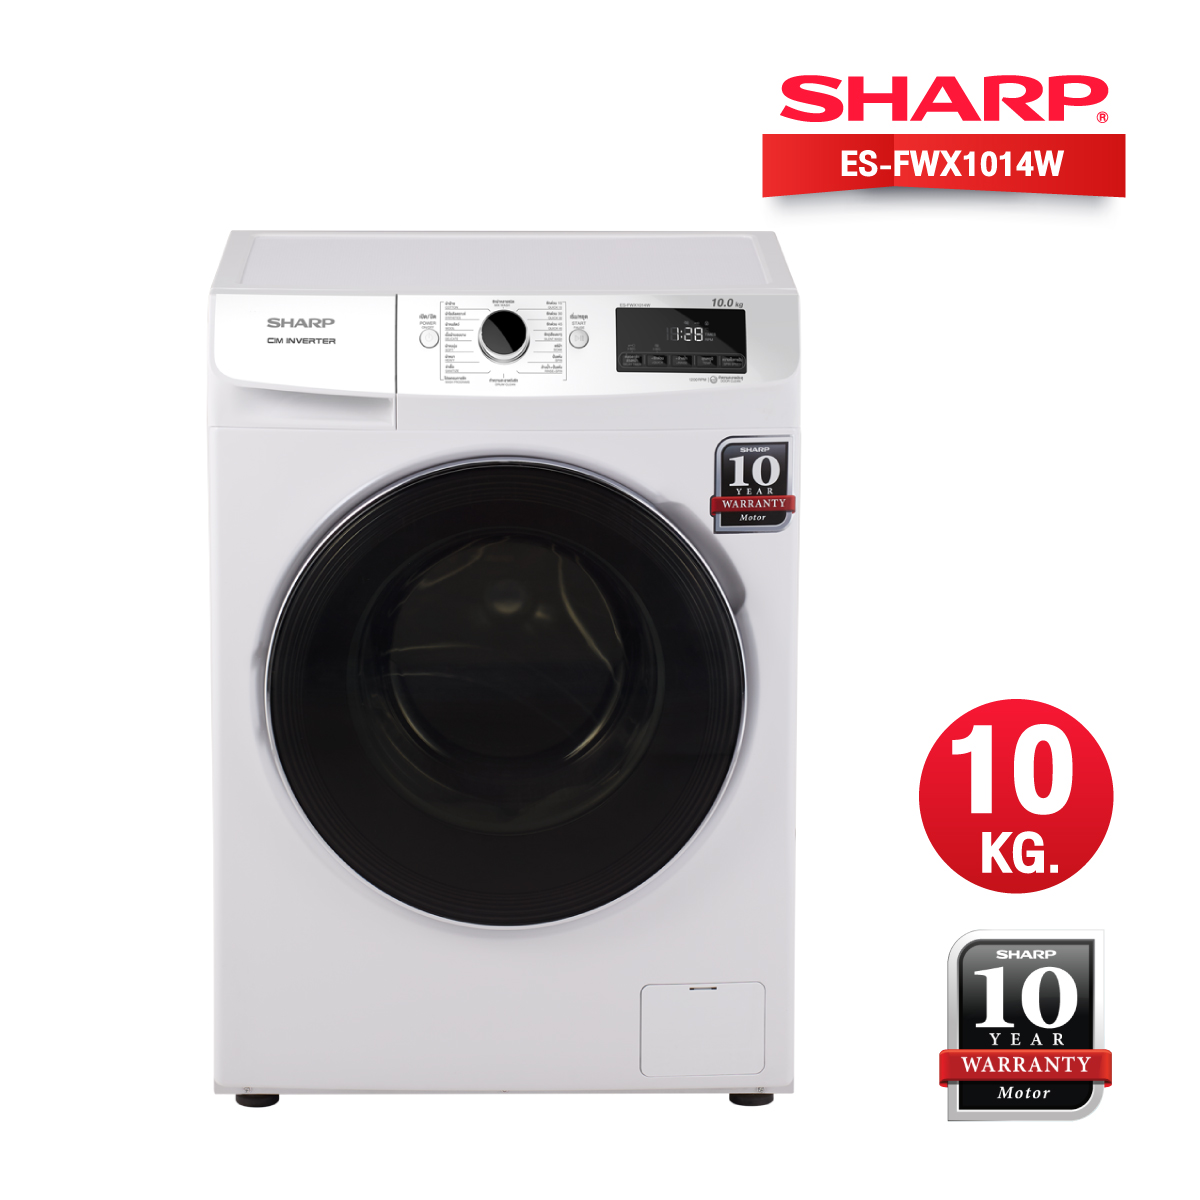 เครื่องซักผ้าฝาหน้า SHARP รุ่น ES-FWX1014W ขนาด 10 kg. รับประกันสินค้า 1 ปี มอเตอร์ 10 ปี